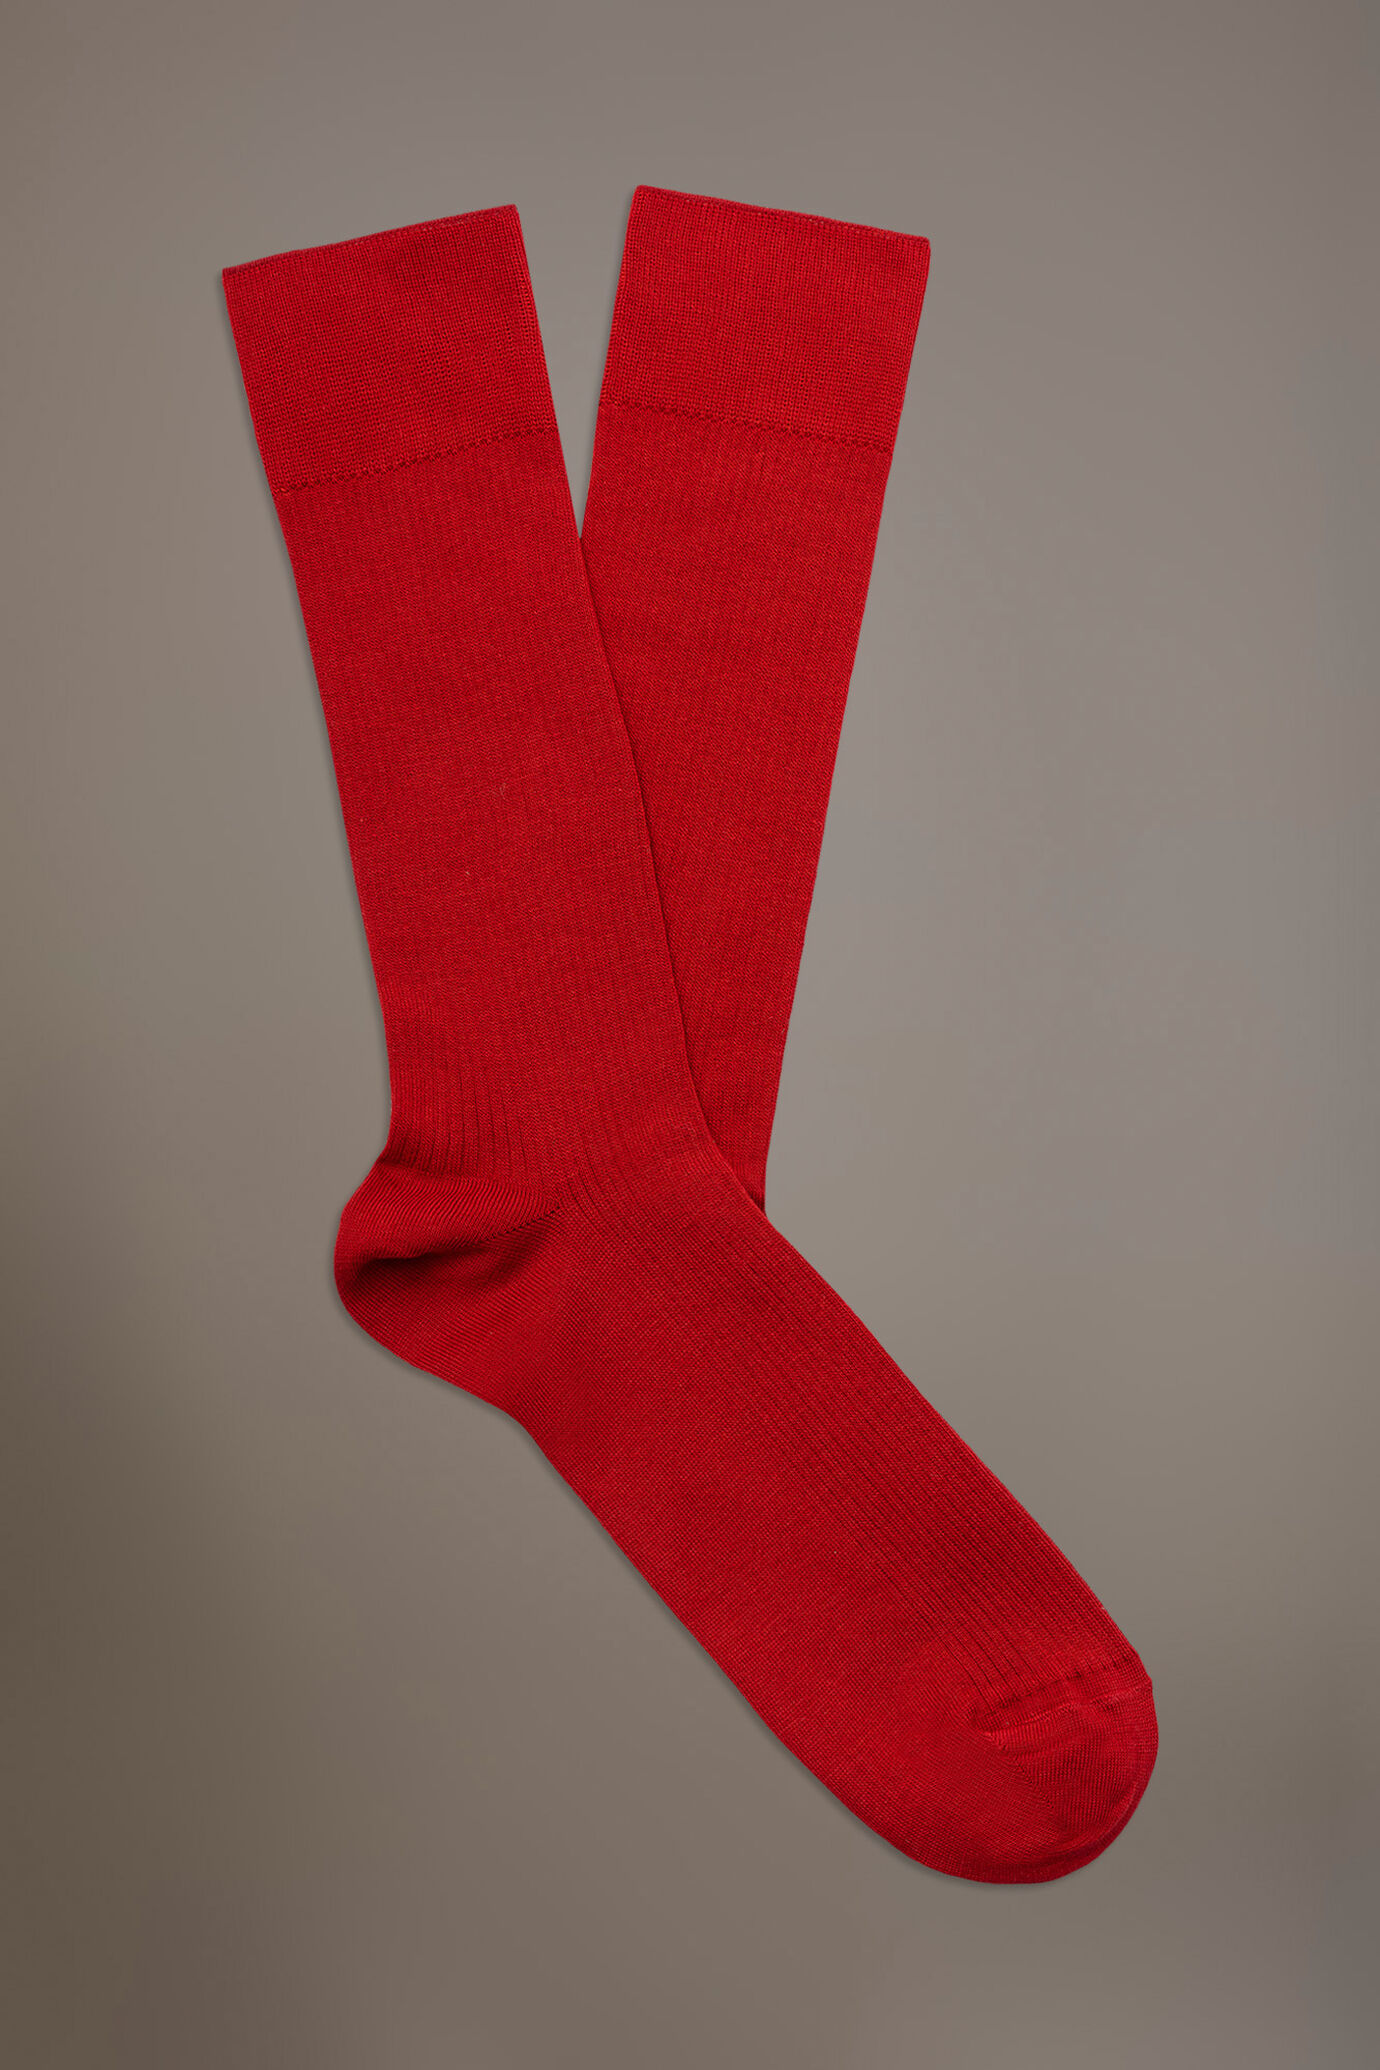 Kurze Socken aus Rippenstrick in Italien hergestellt